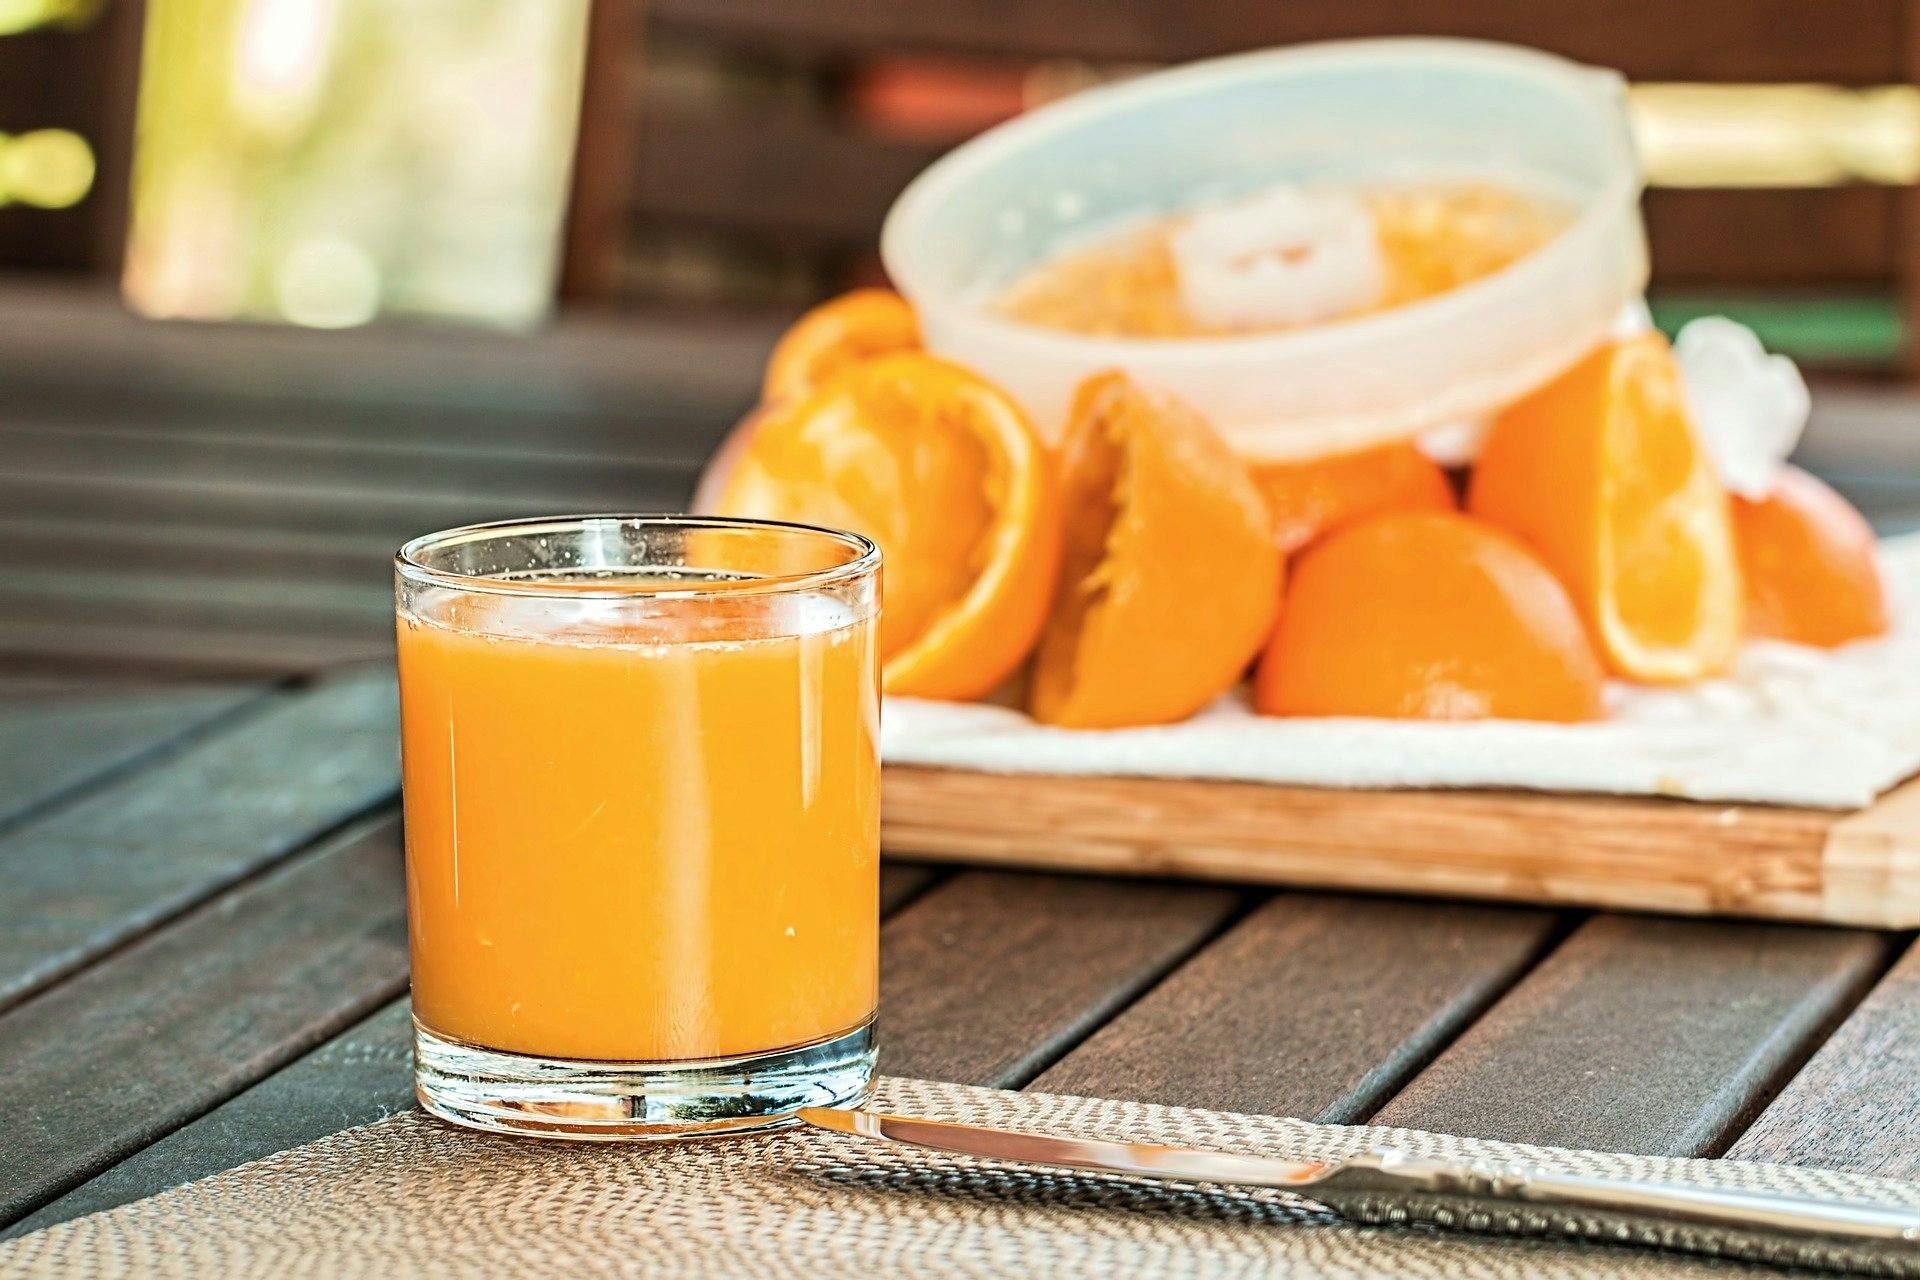 Le jus d orange pressé : conseils pour préparer un jus d'orange maison